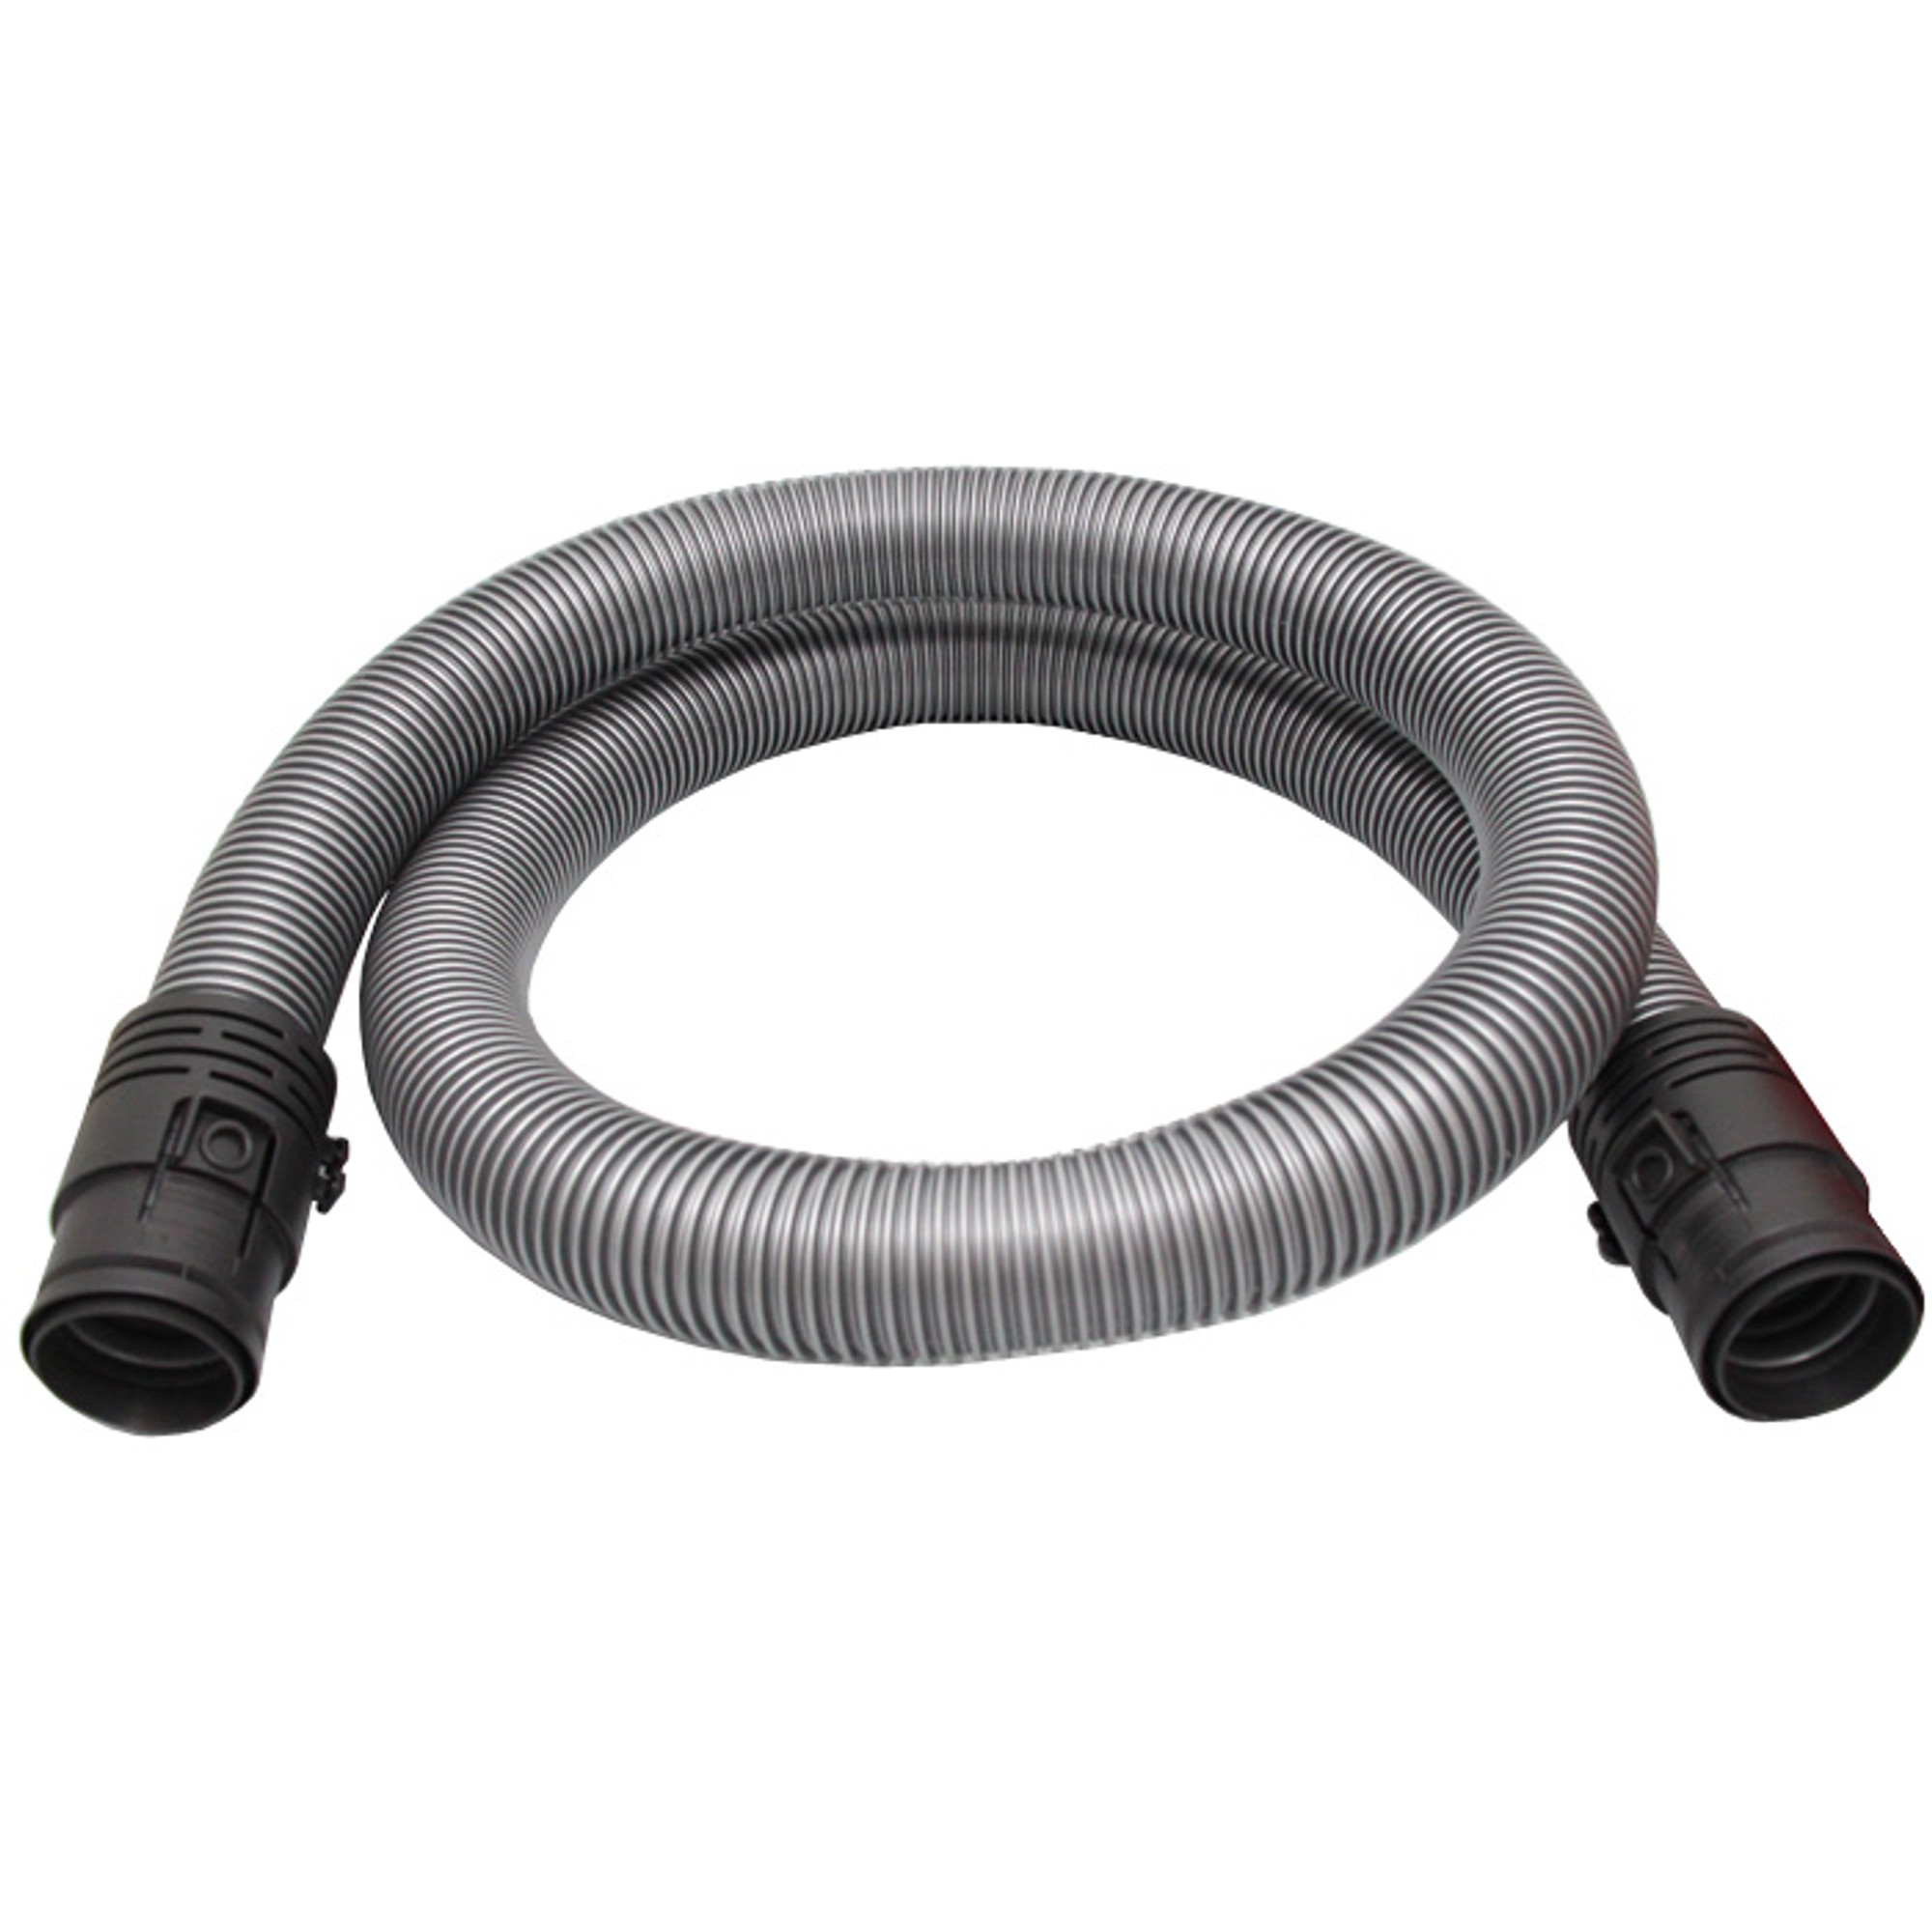 Vacuum cleaner hose for Miele Calypso s252i Flamenco s271i 